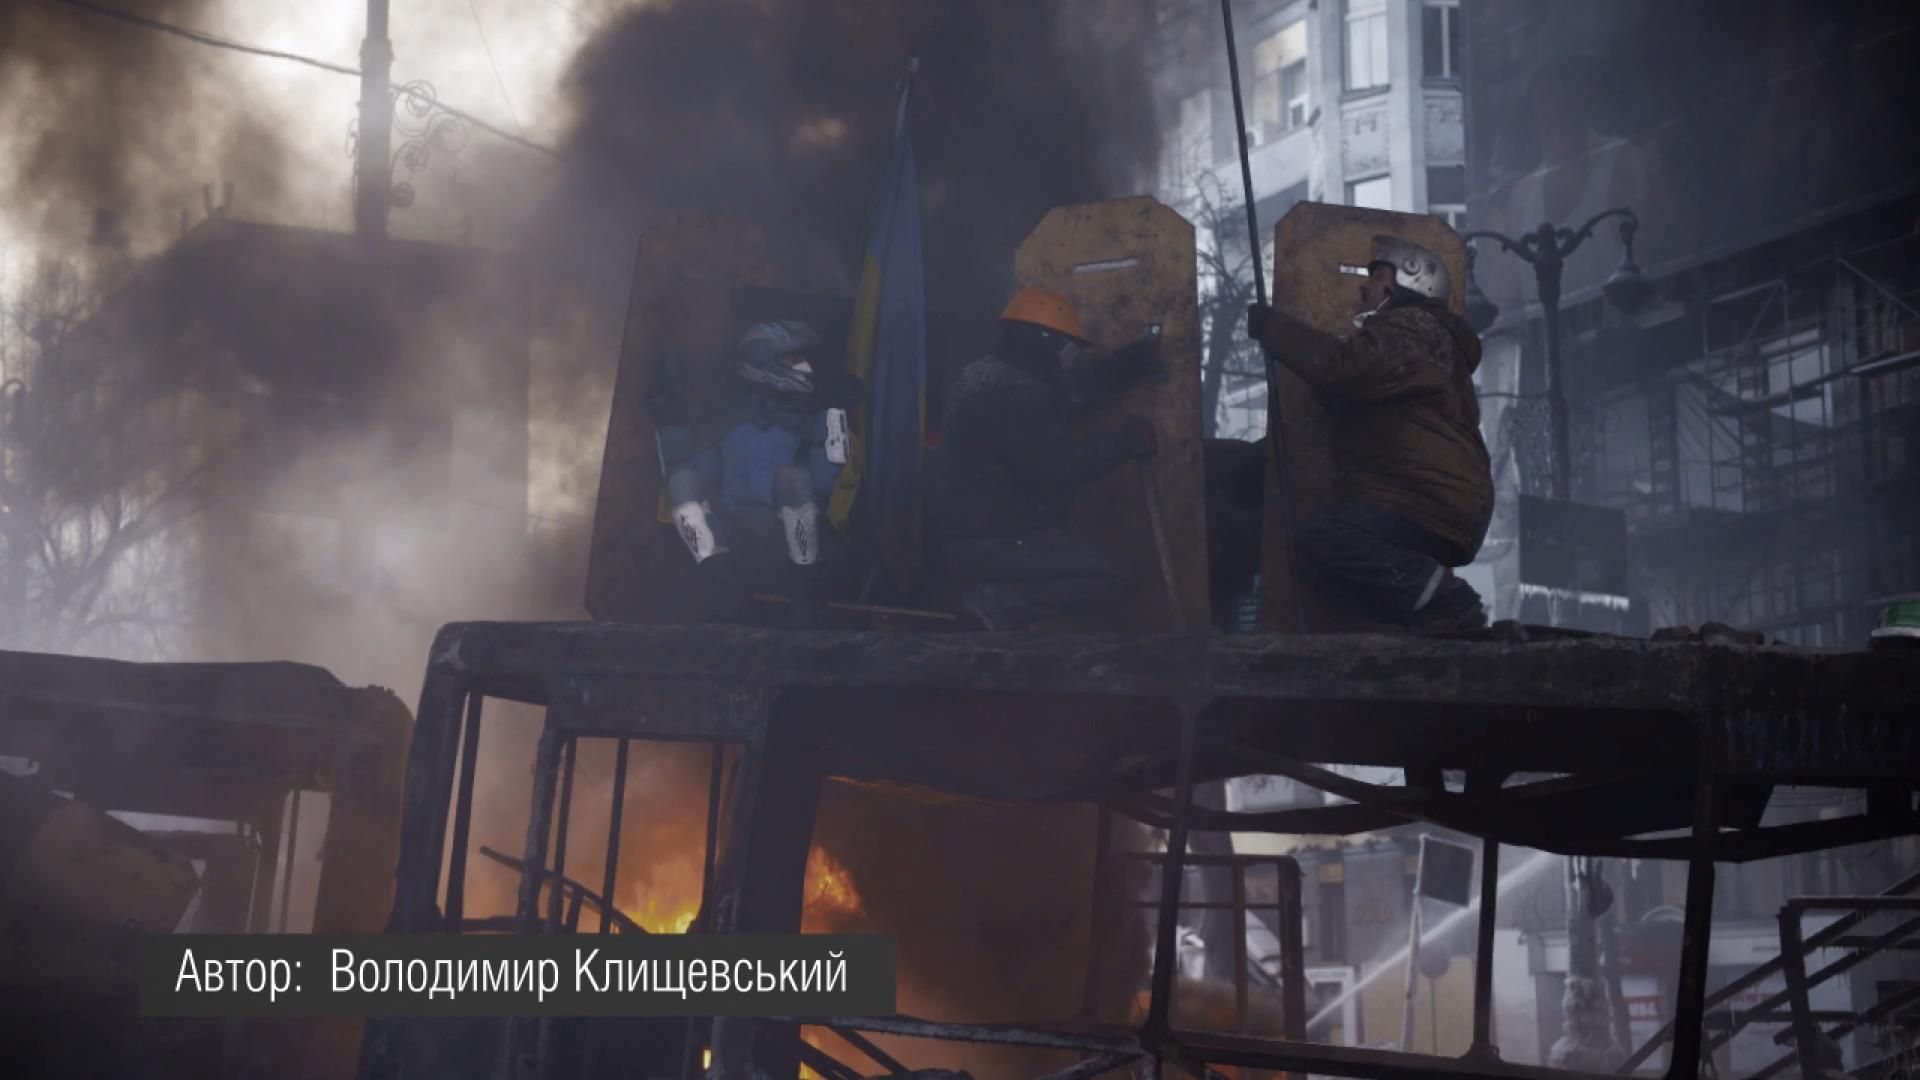 Мой Майдан. Подборка фото и видео с Евромайдана, которые вы еще не видели - 21 февраля 2015 - Телеканал новин 24